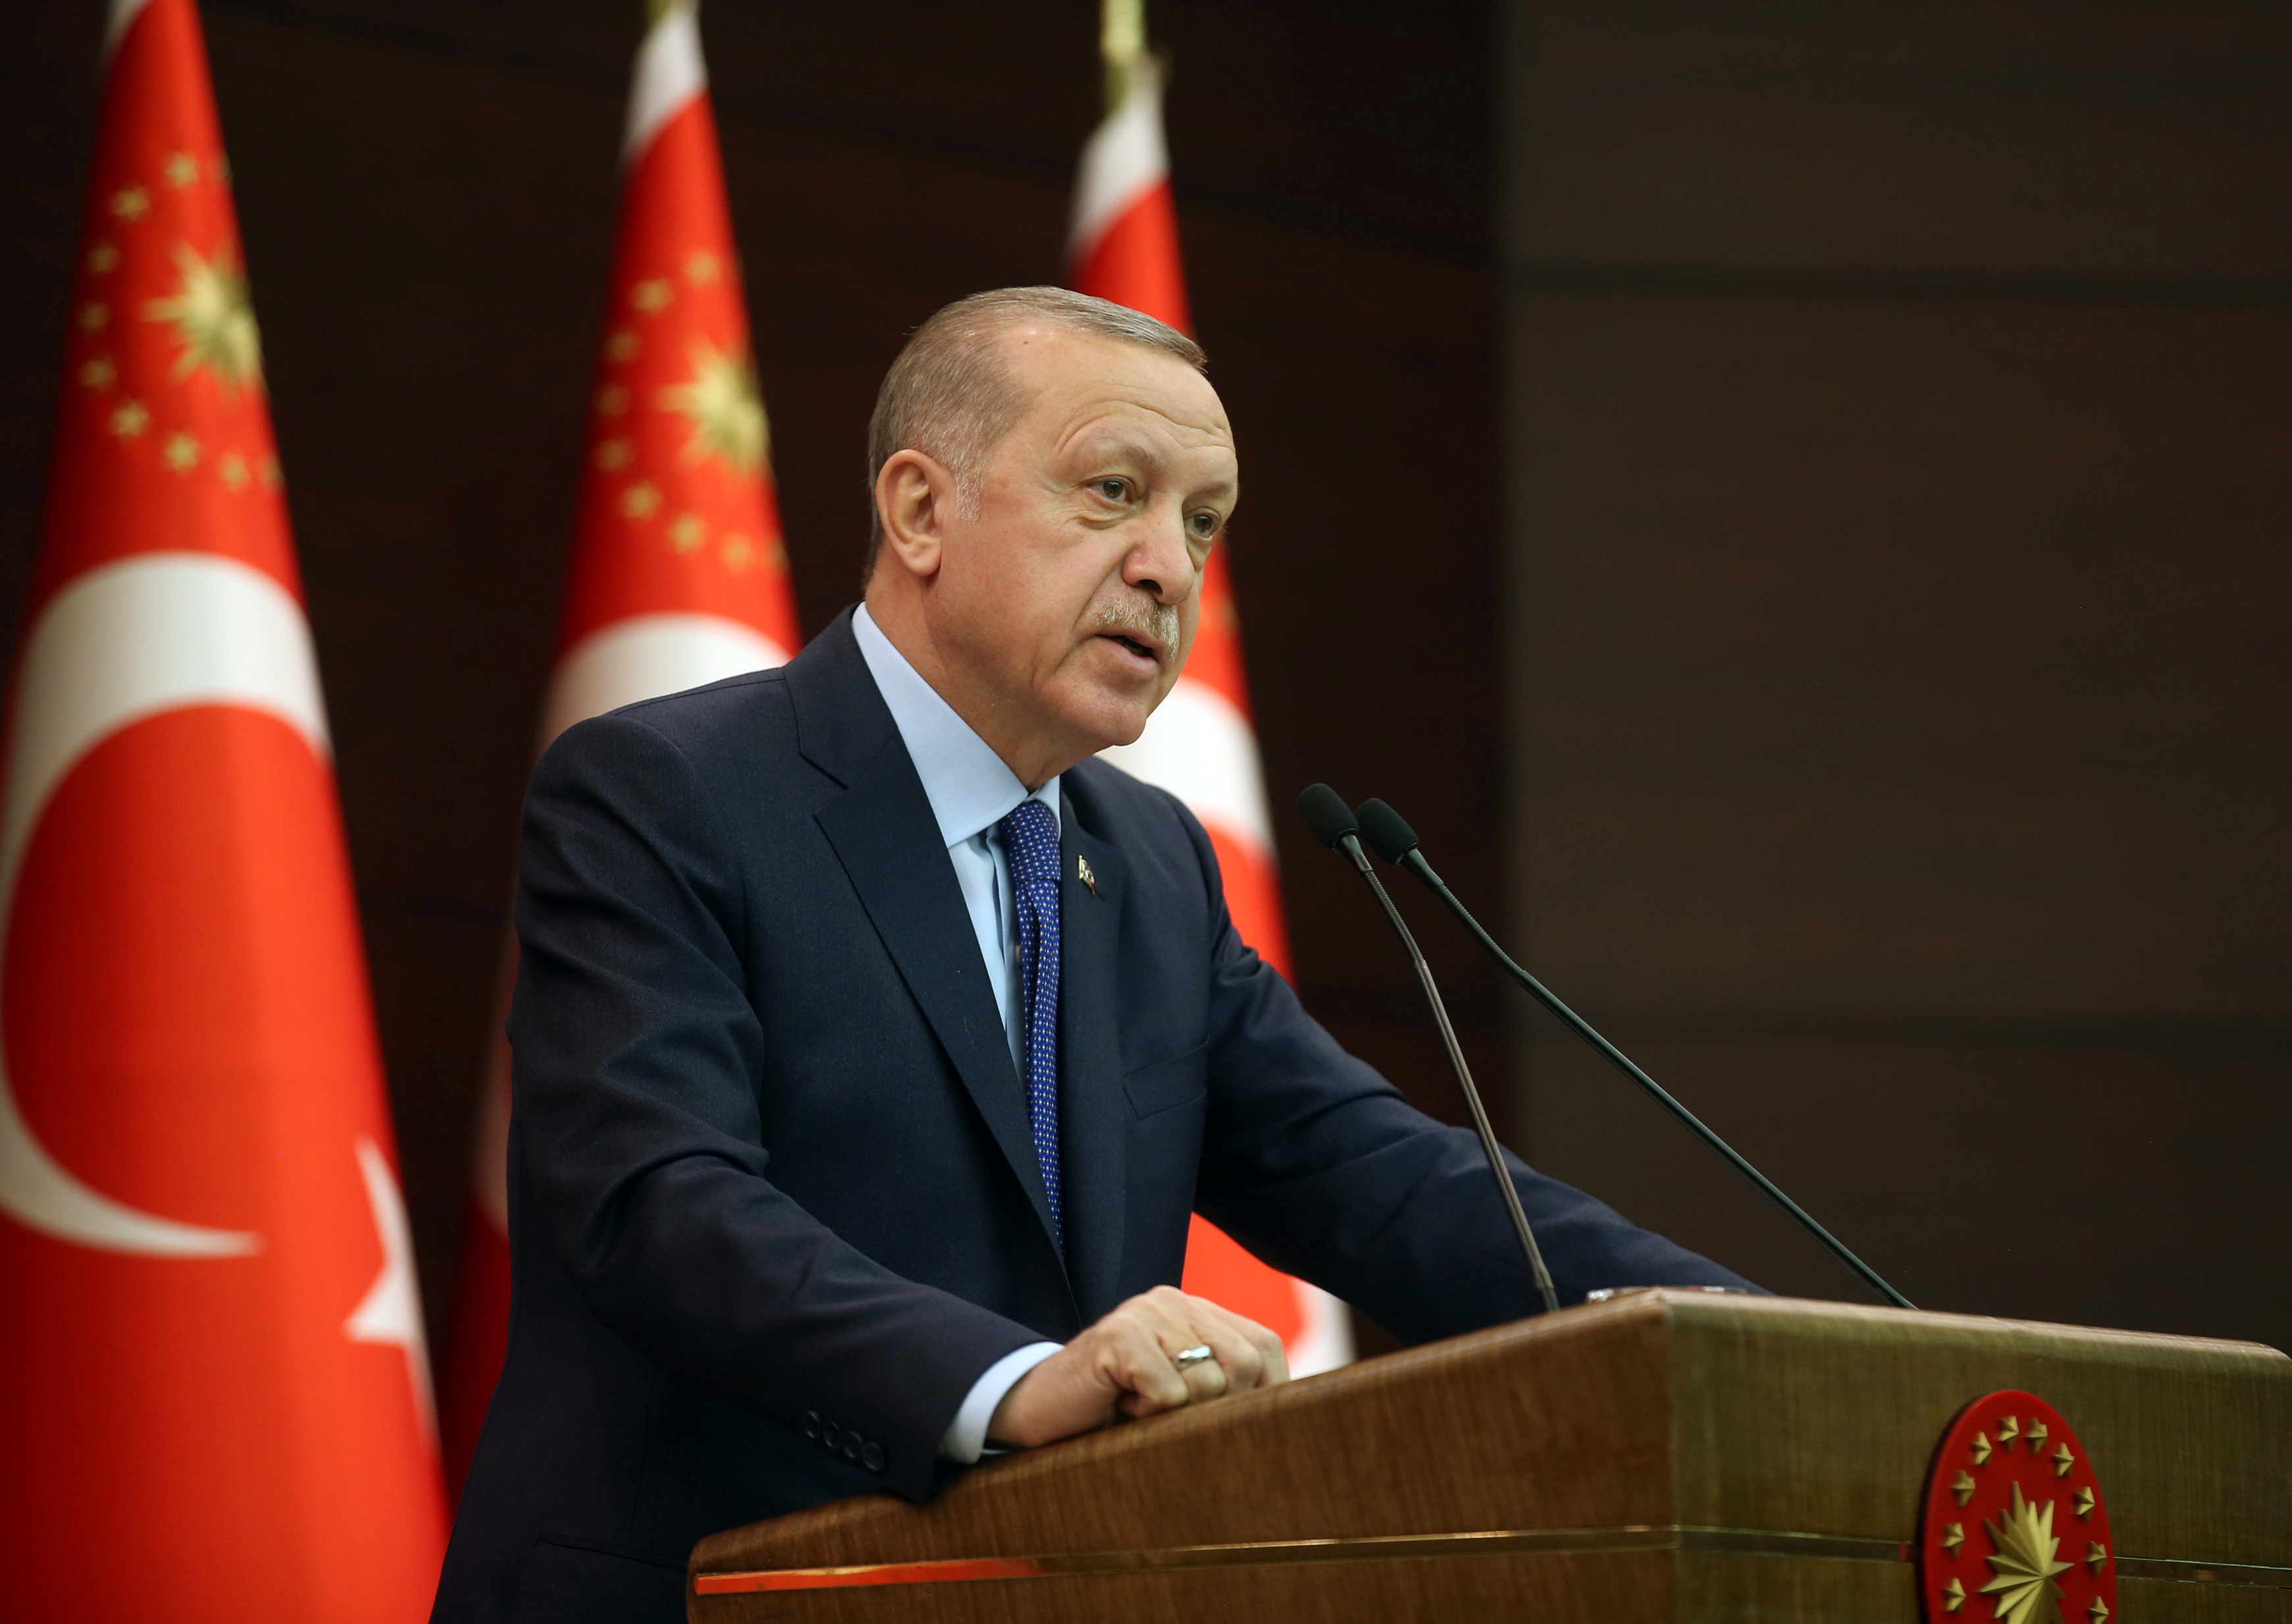 Cumhurbaşkanı Recep Tayyip Erdoğan'dan bayram mesajı! Varsın birileri çevremizdeki ateşi ülkemize taşımak için provokasyon peşinde koşsun. Biz bu tuzaklara asla düşmeyeceğiz